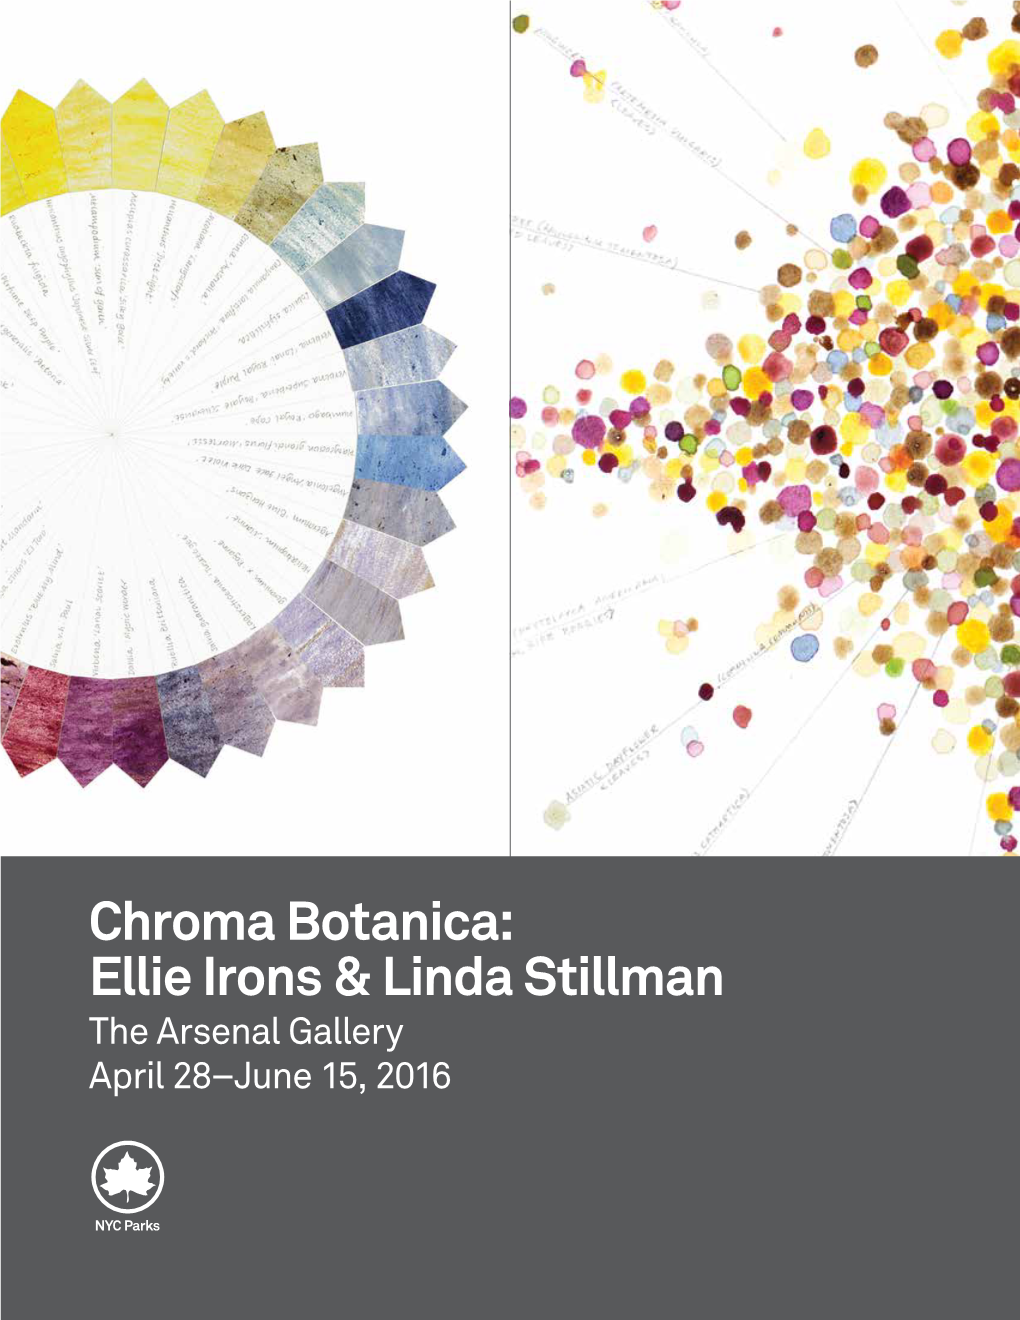 Chroma Botanica: Ellie Irons & Linda Stillman